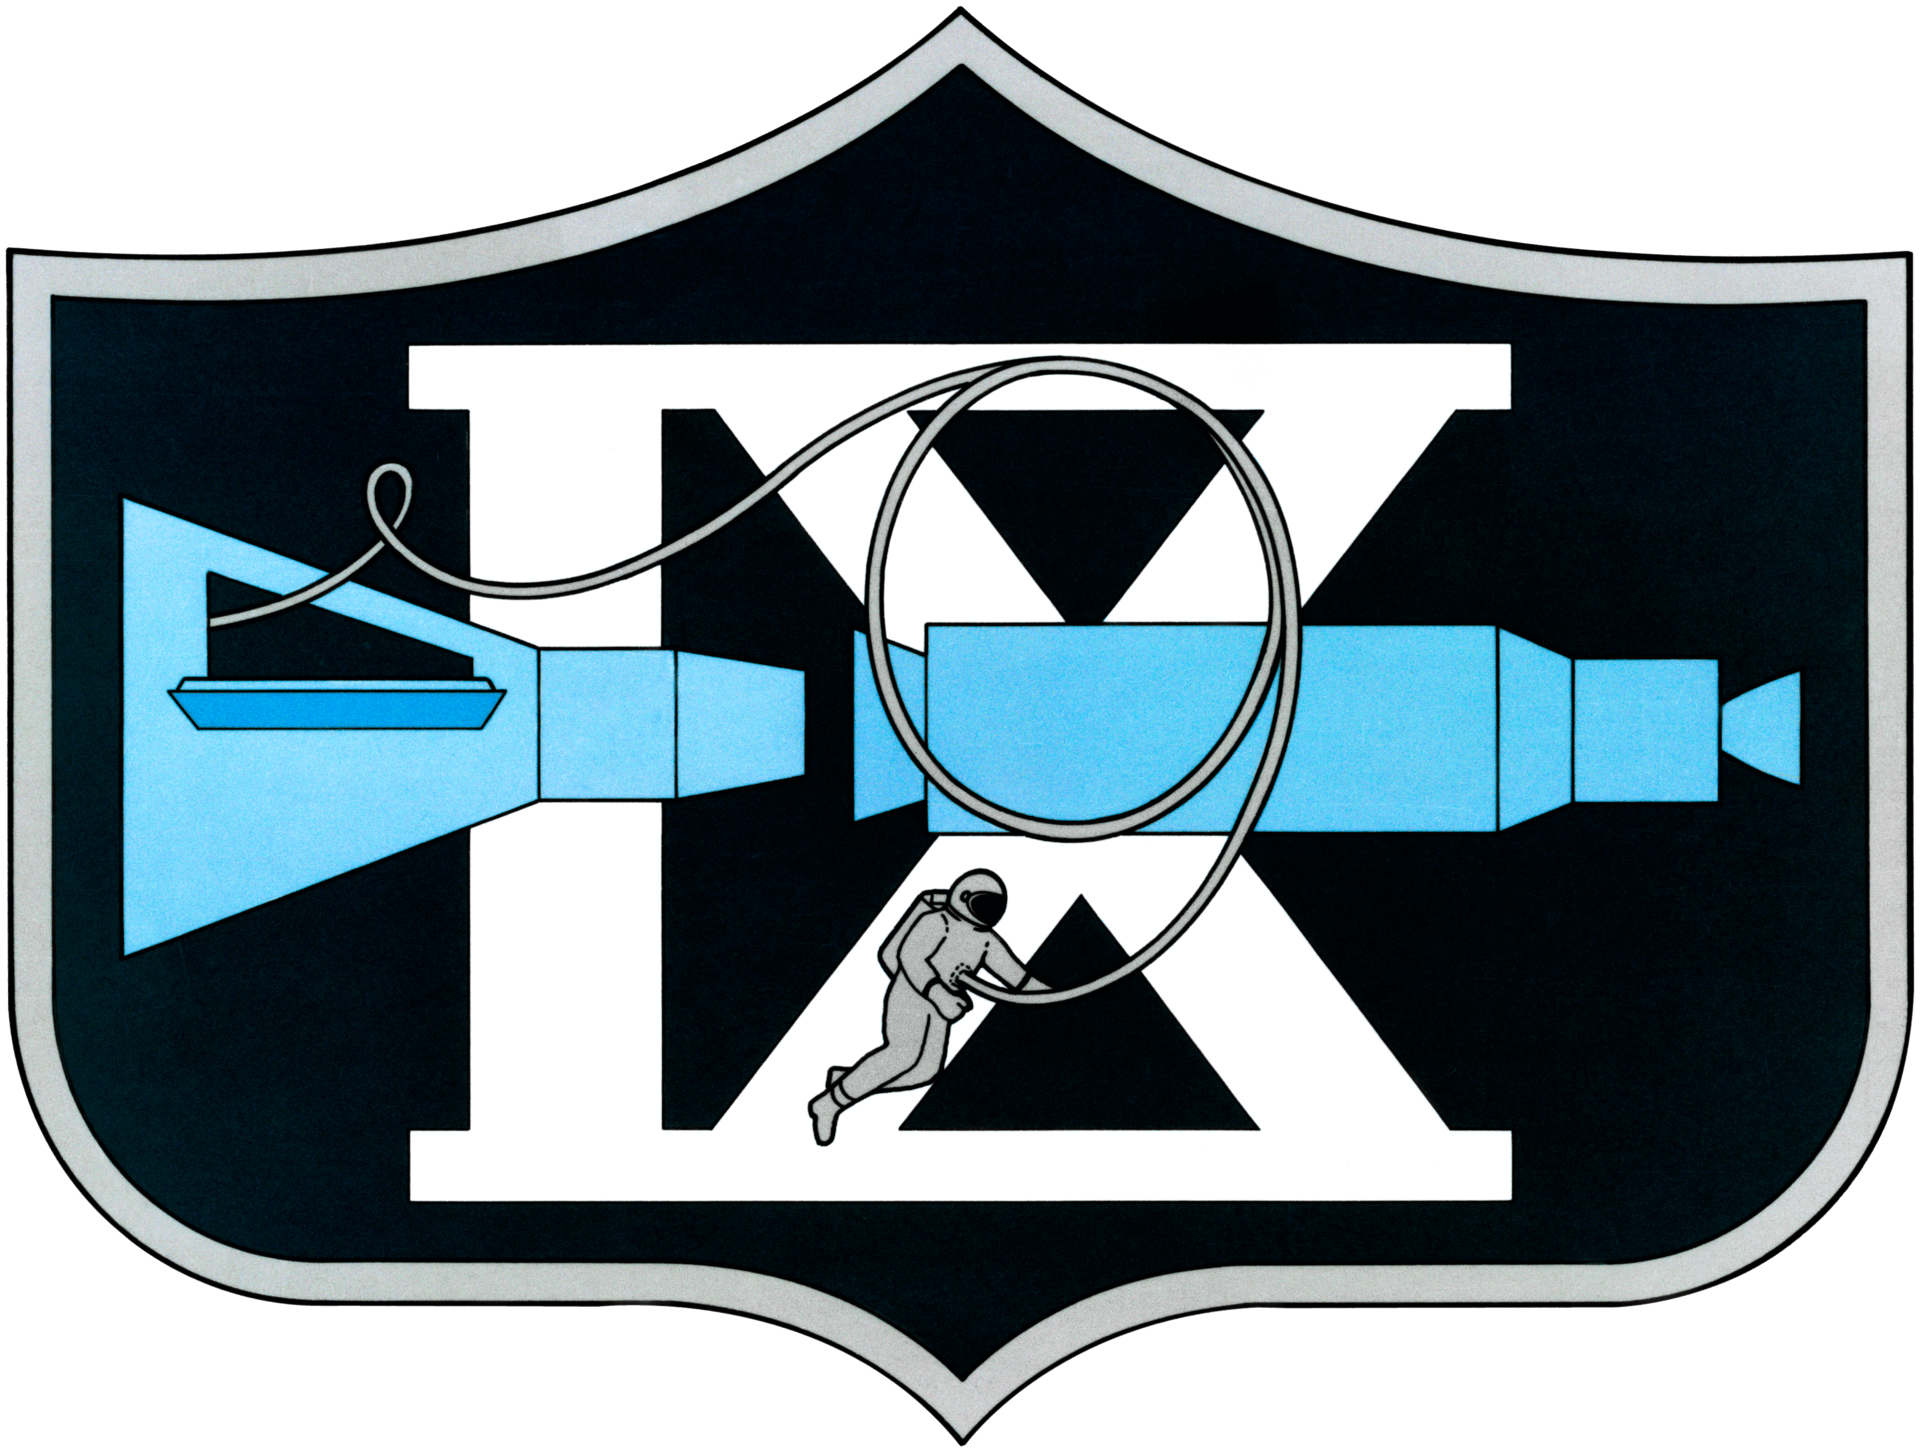 Mission patch for Gemini IX-A (Gemini 9A)